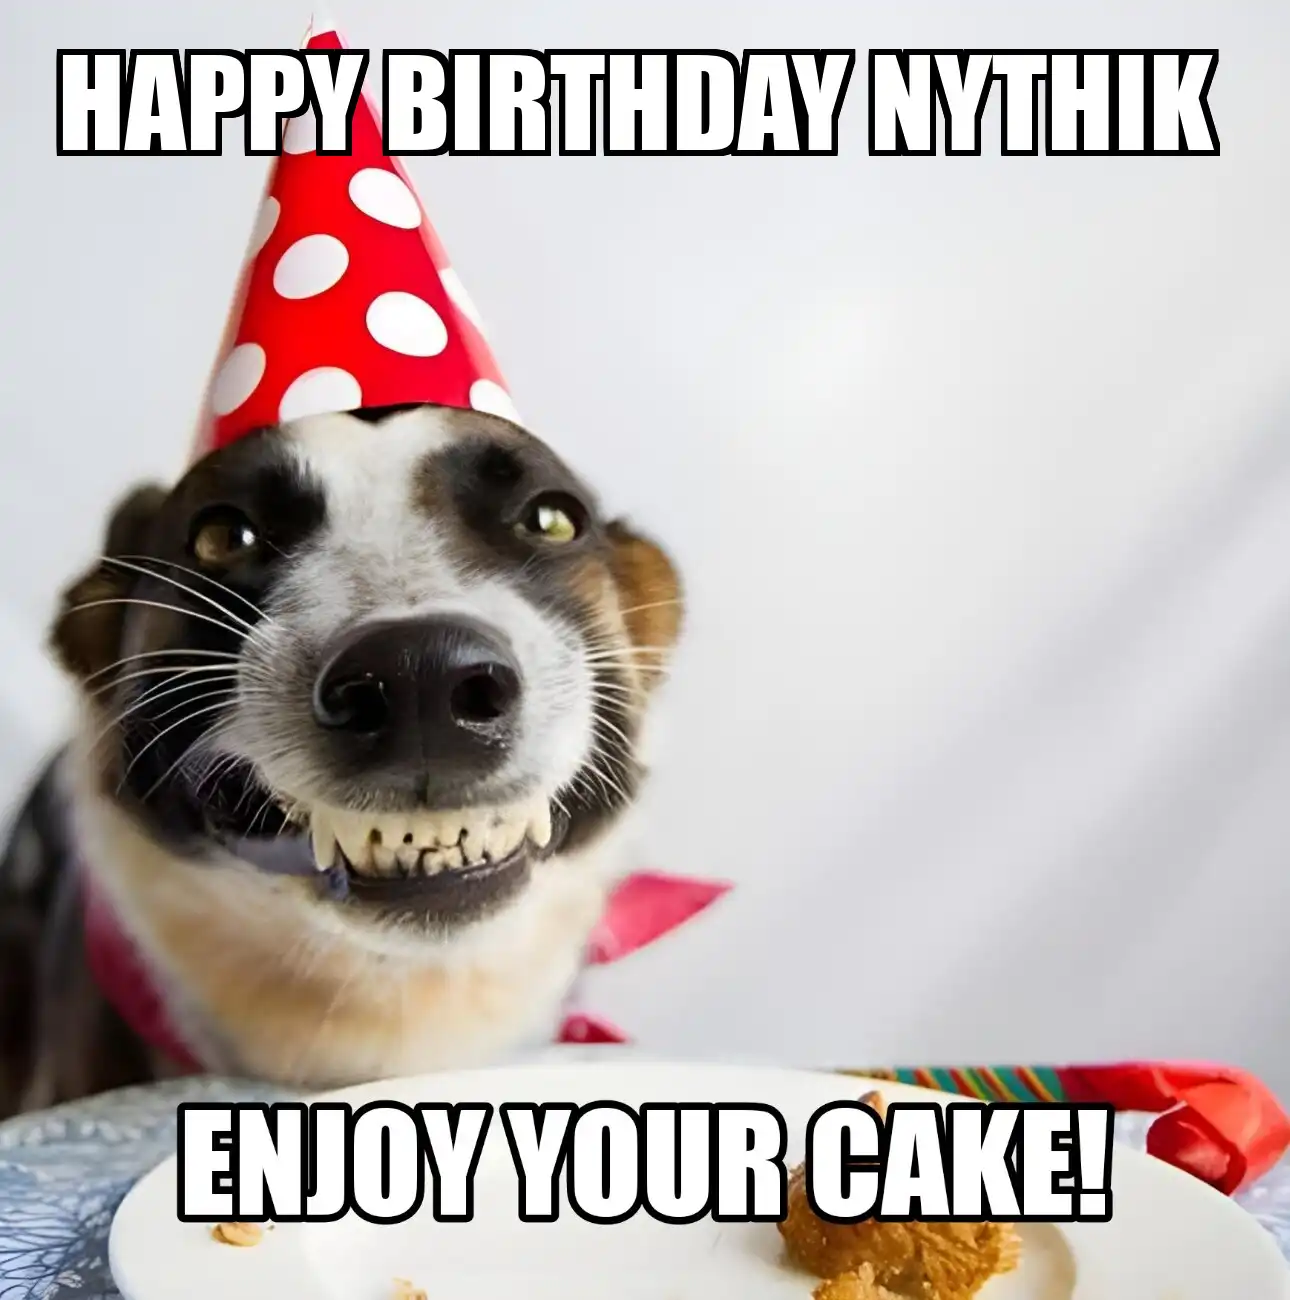 Happy Birthday Nythik Enjoy Your Cake Dog Meme